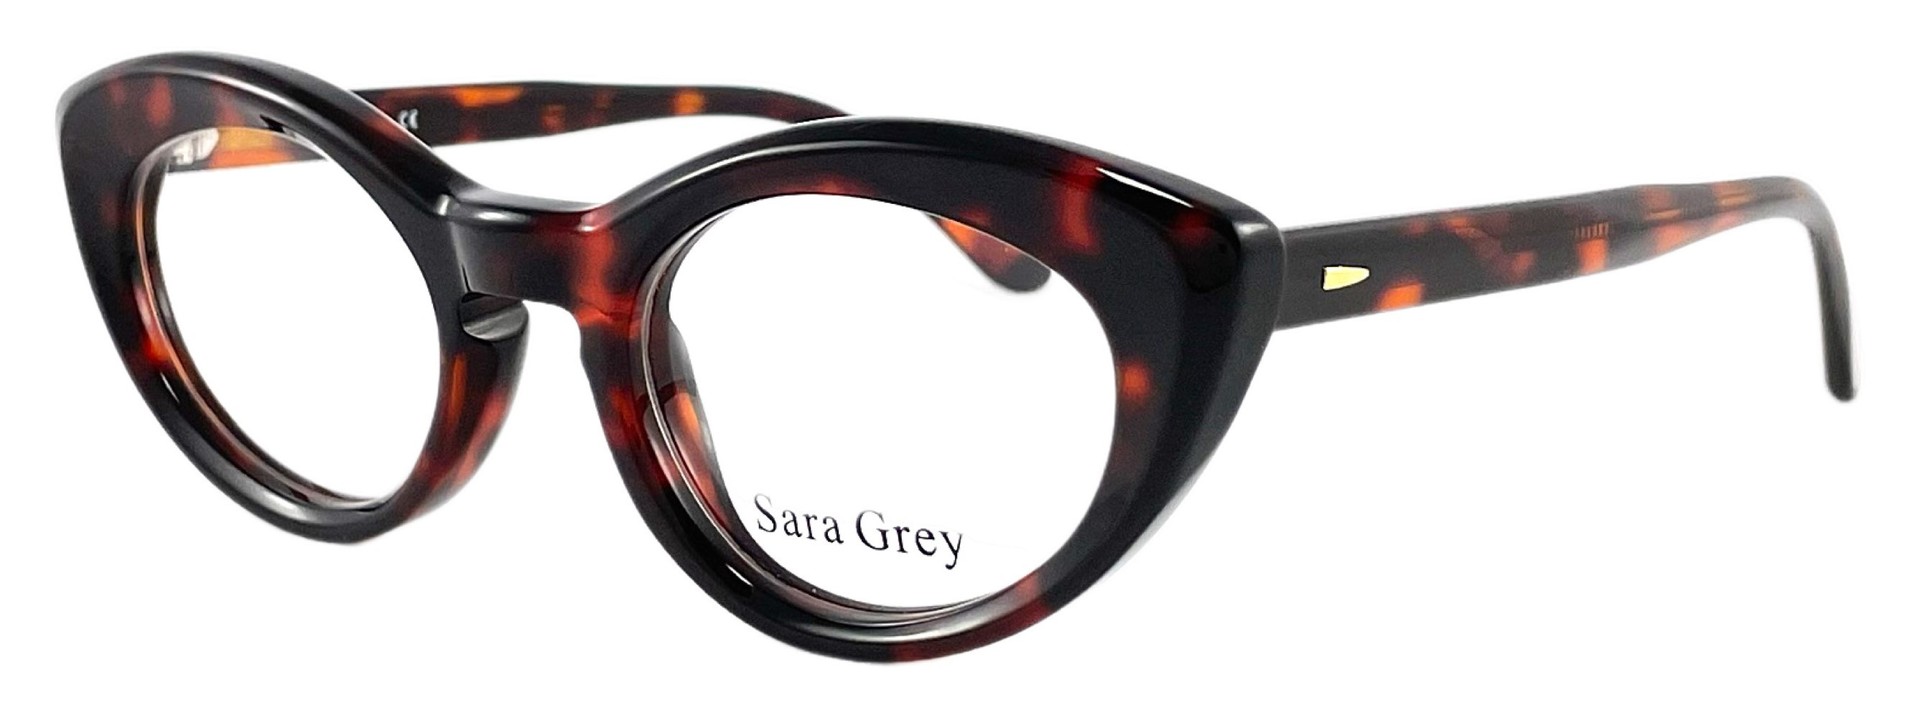 Sara Grey 1967 C02 2